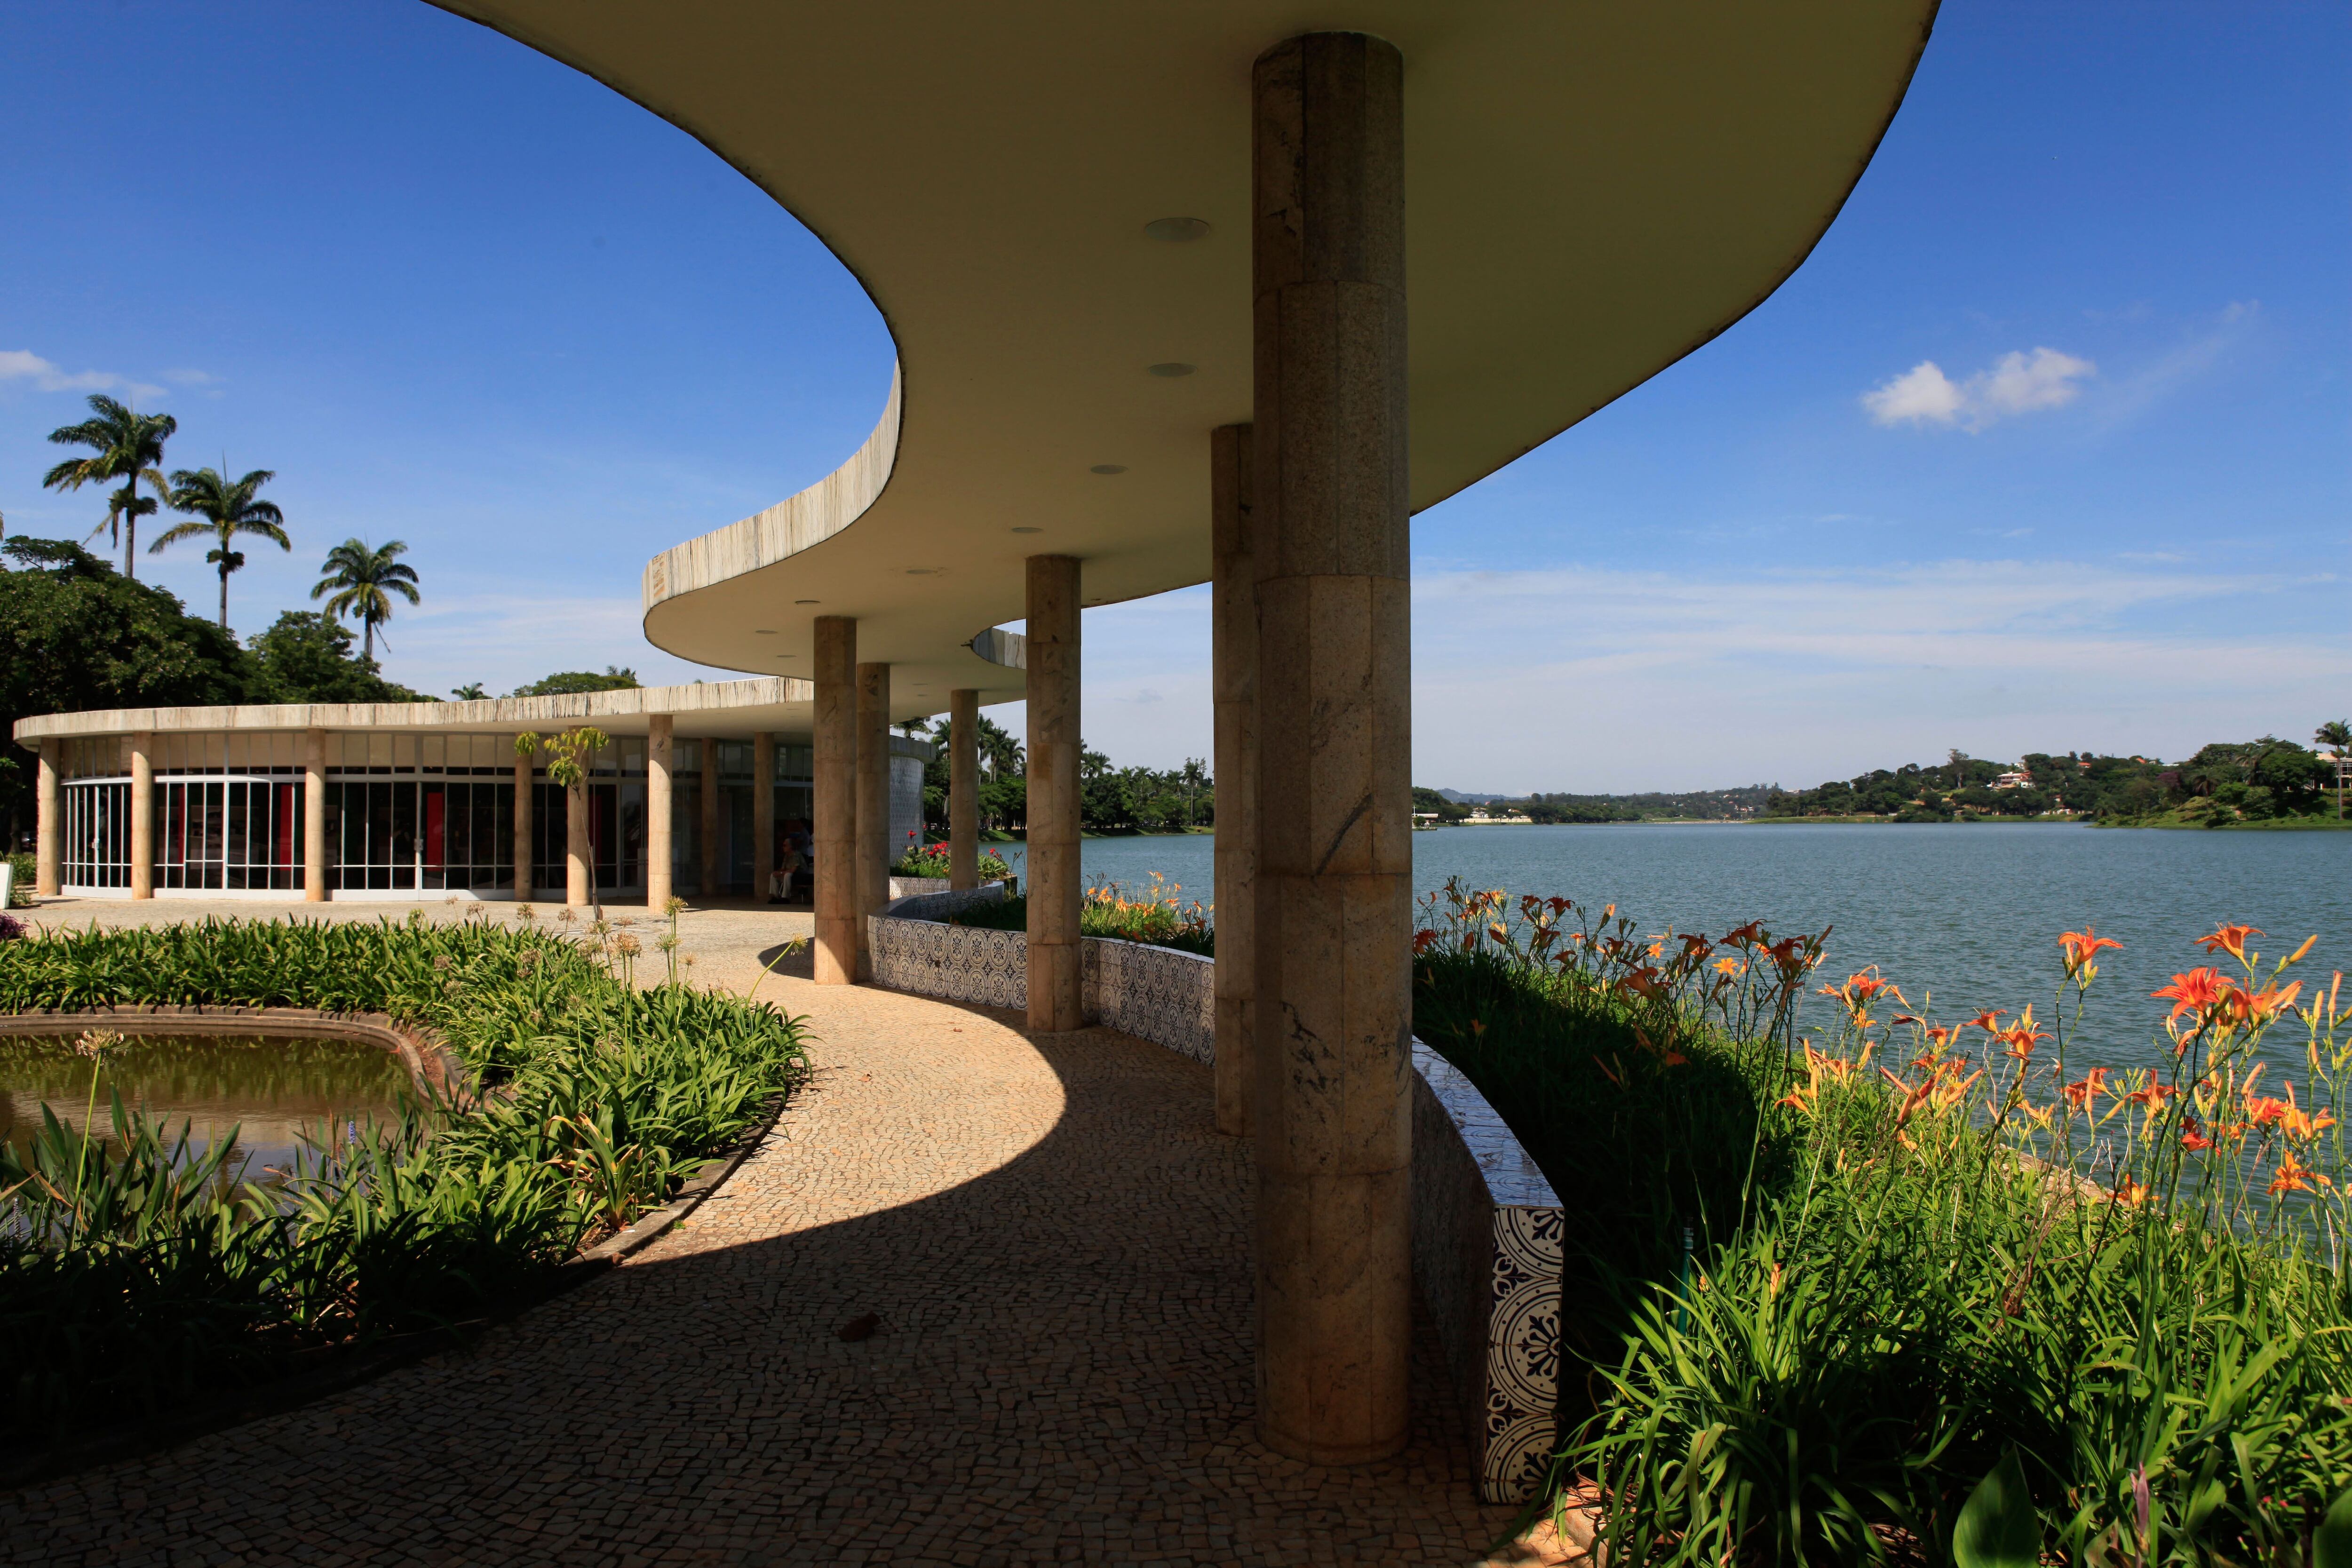 El jardín del lago Pampulha lake, proyectado por Oscar Niemeyer y Burle Marx.